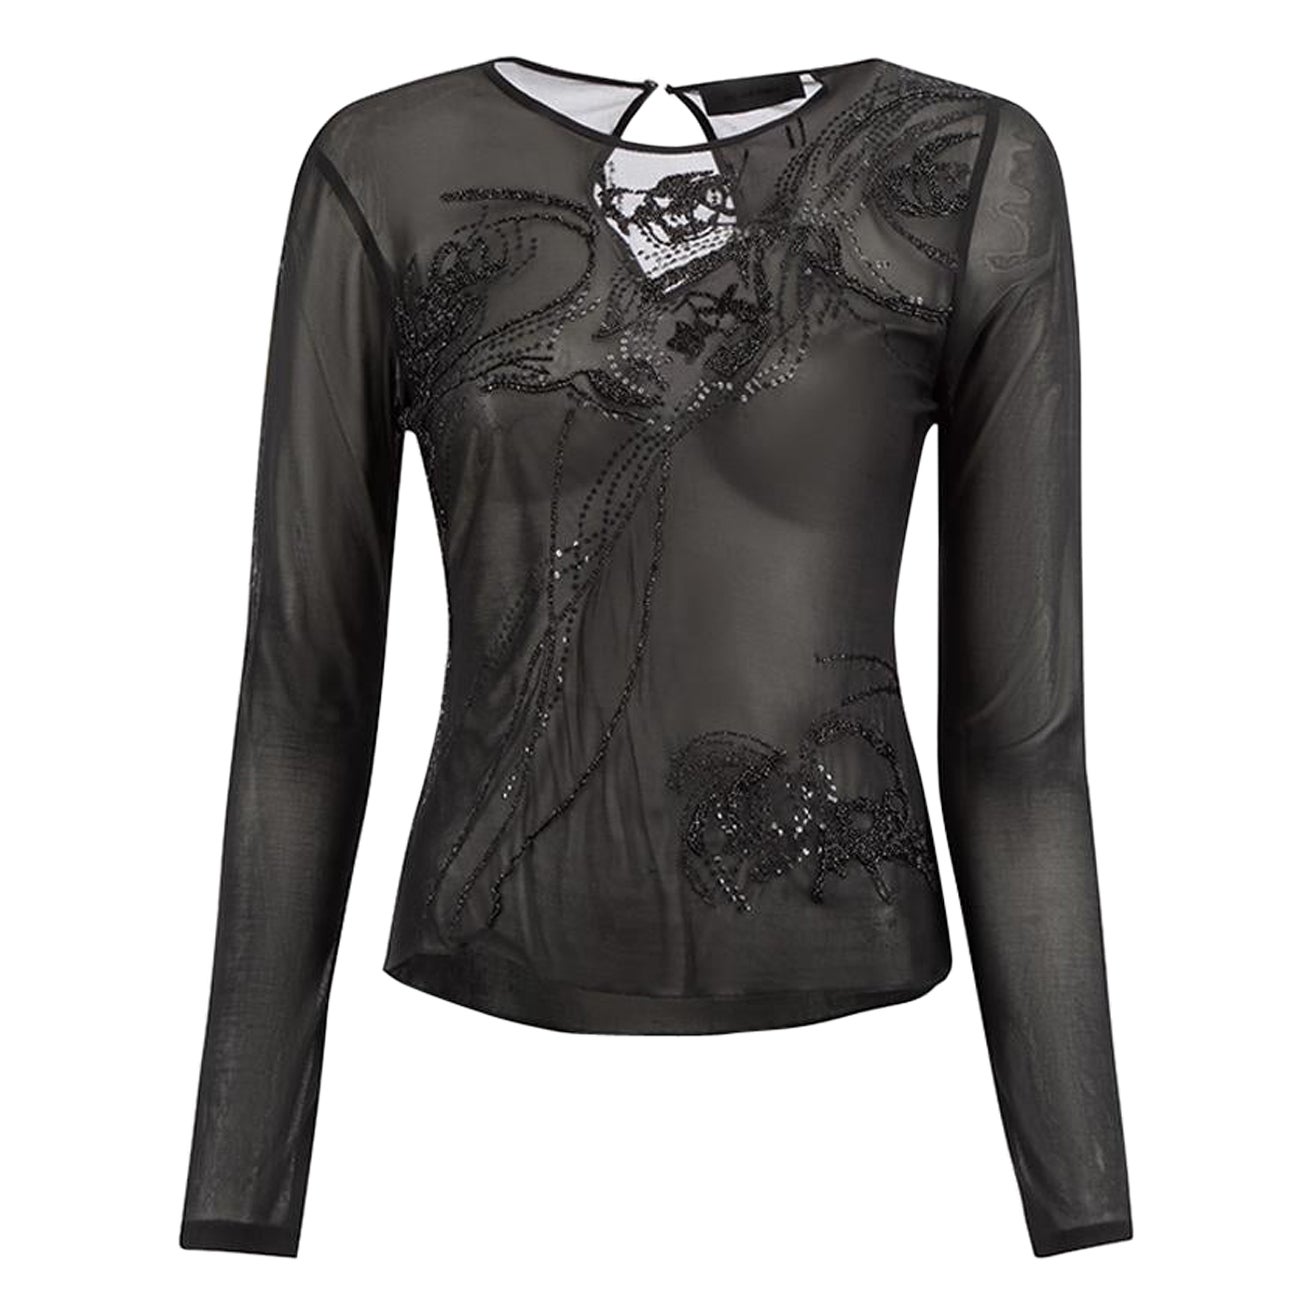 Nicole Farhi Black Embellished Sheer Top Size S For Sale